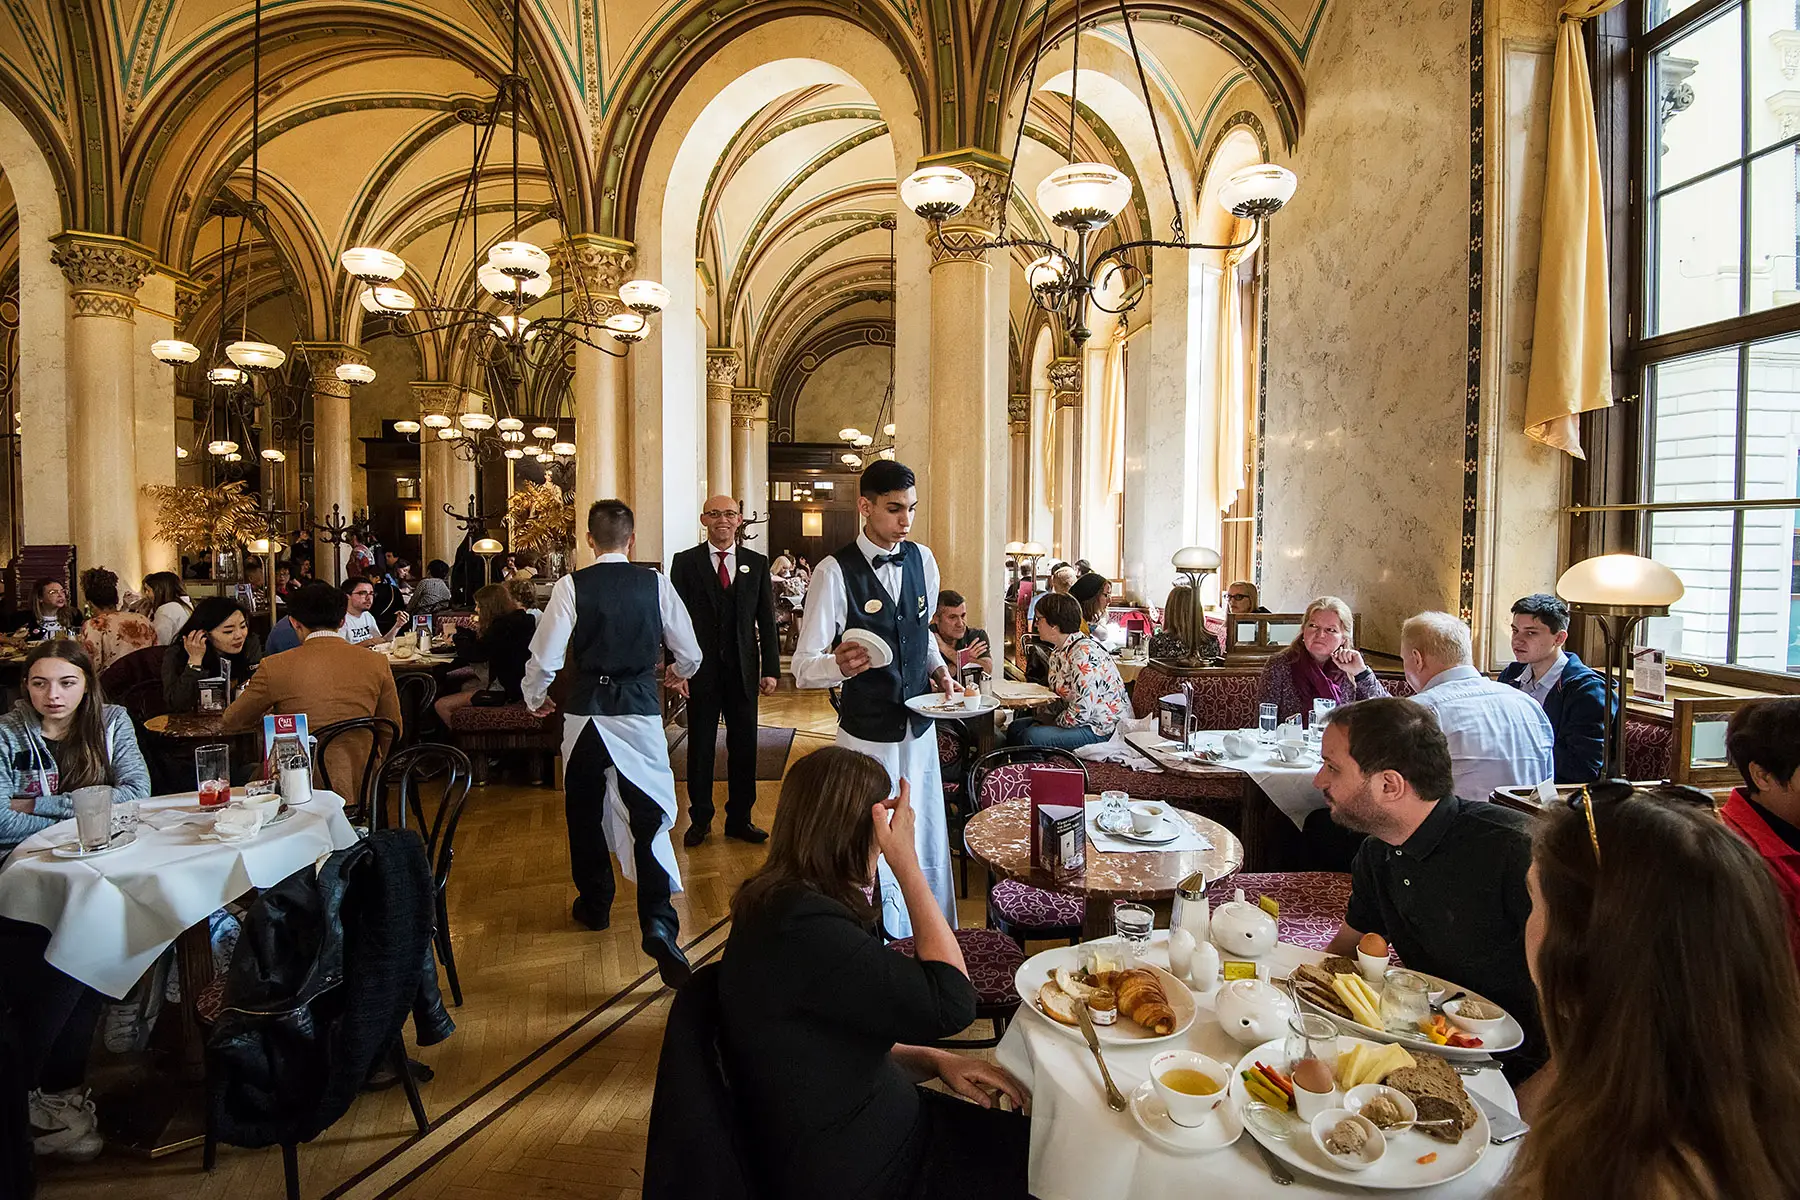 A busy restaurant in Vienna